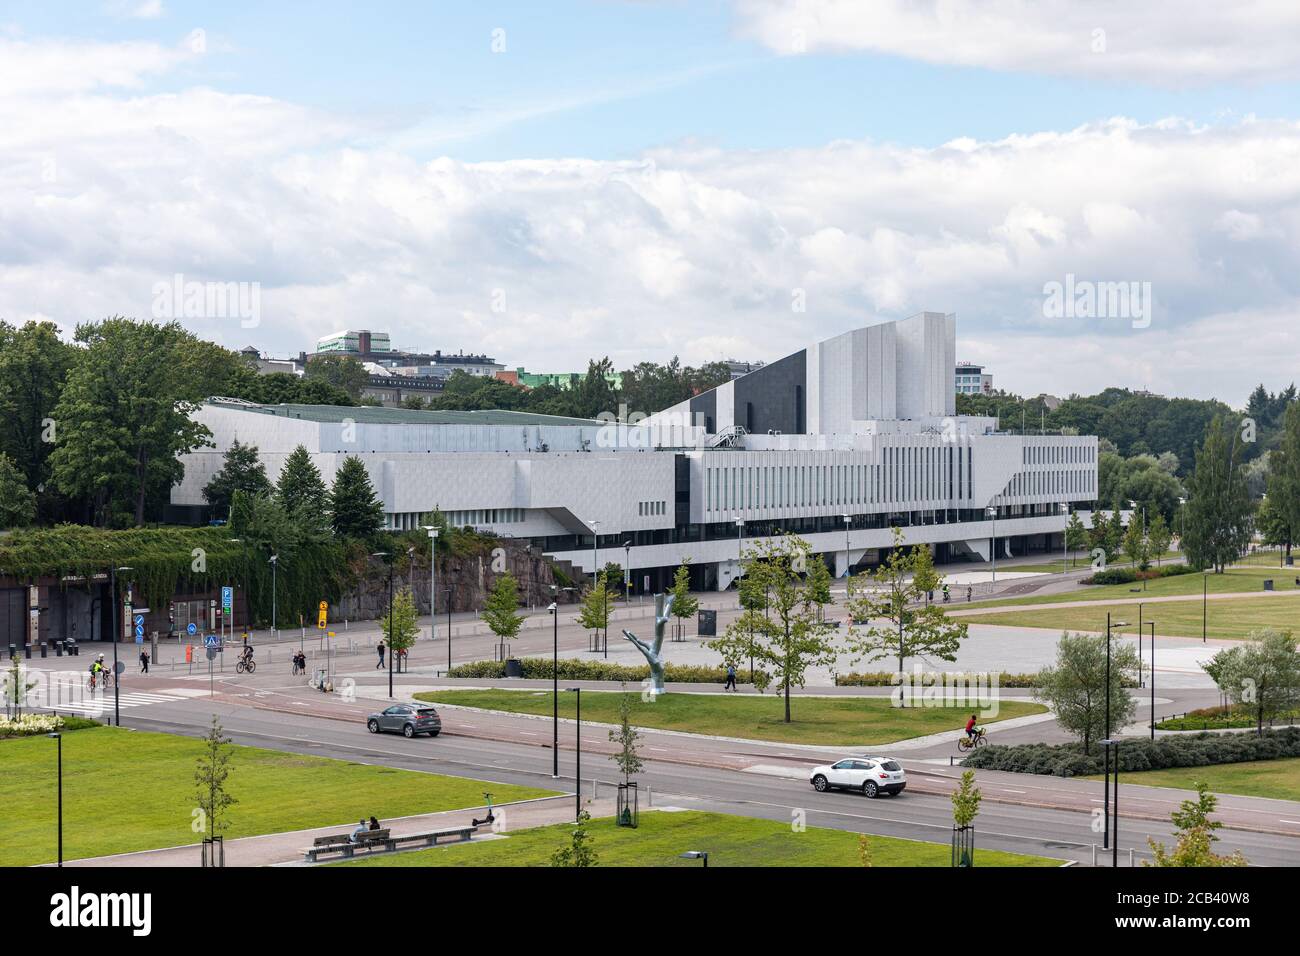 Sede di congressi ed eventi Finlandia Hall, progettata dall'architetto Alvar Aalto e completata nel 1971, nel distretto di Töölö a Helsinki, Finlandia Foto Stock